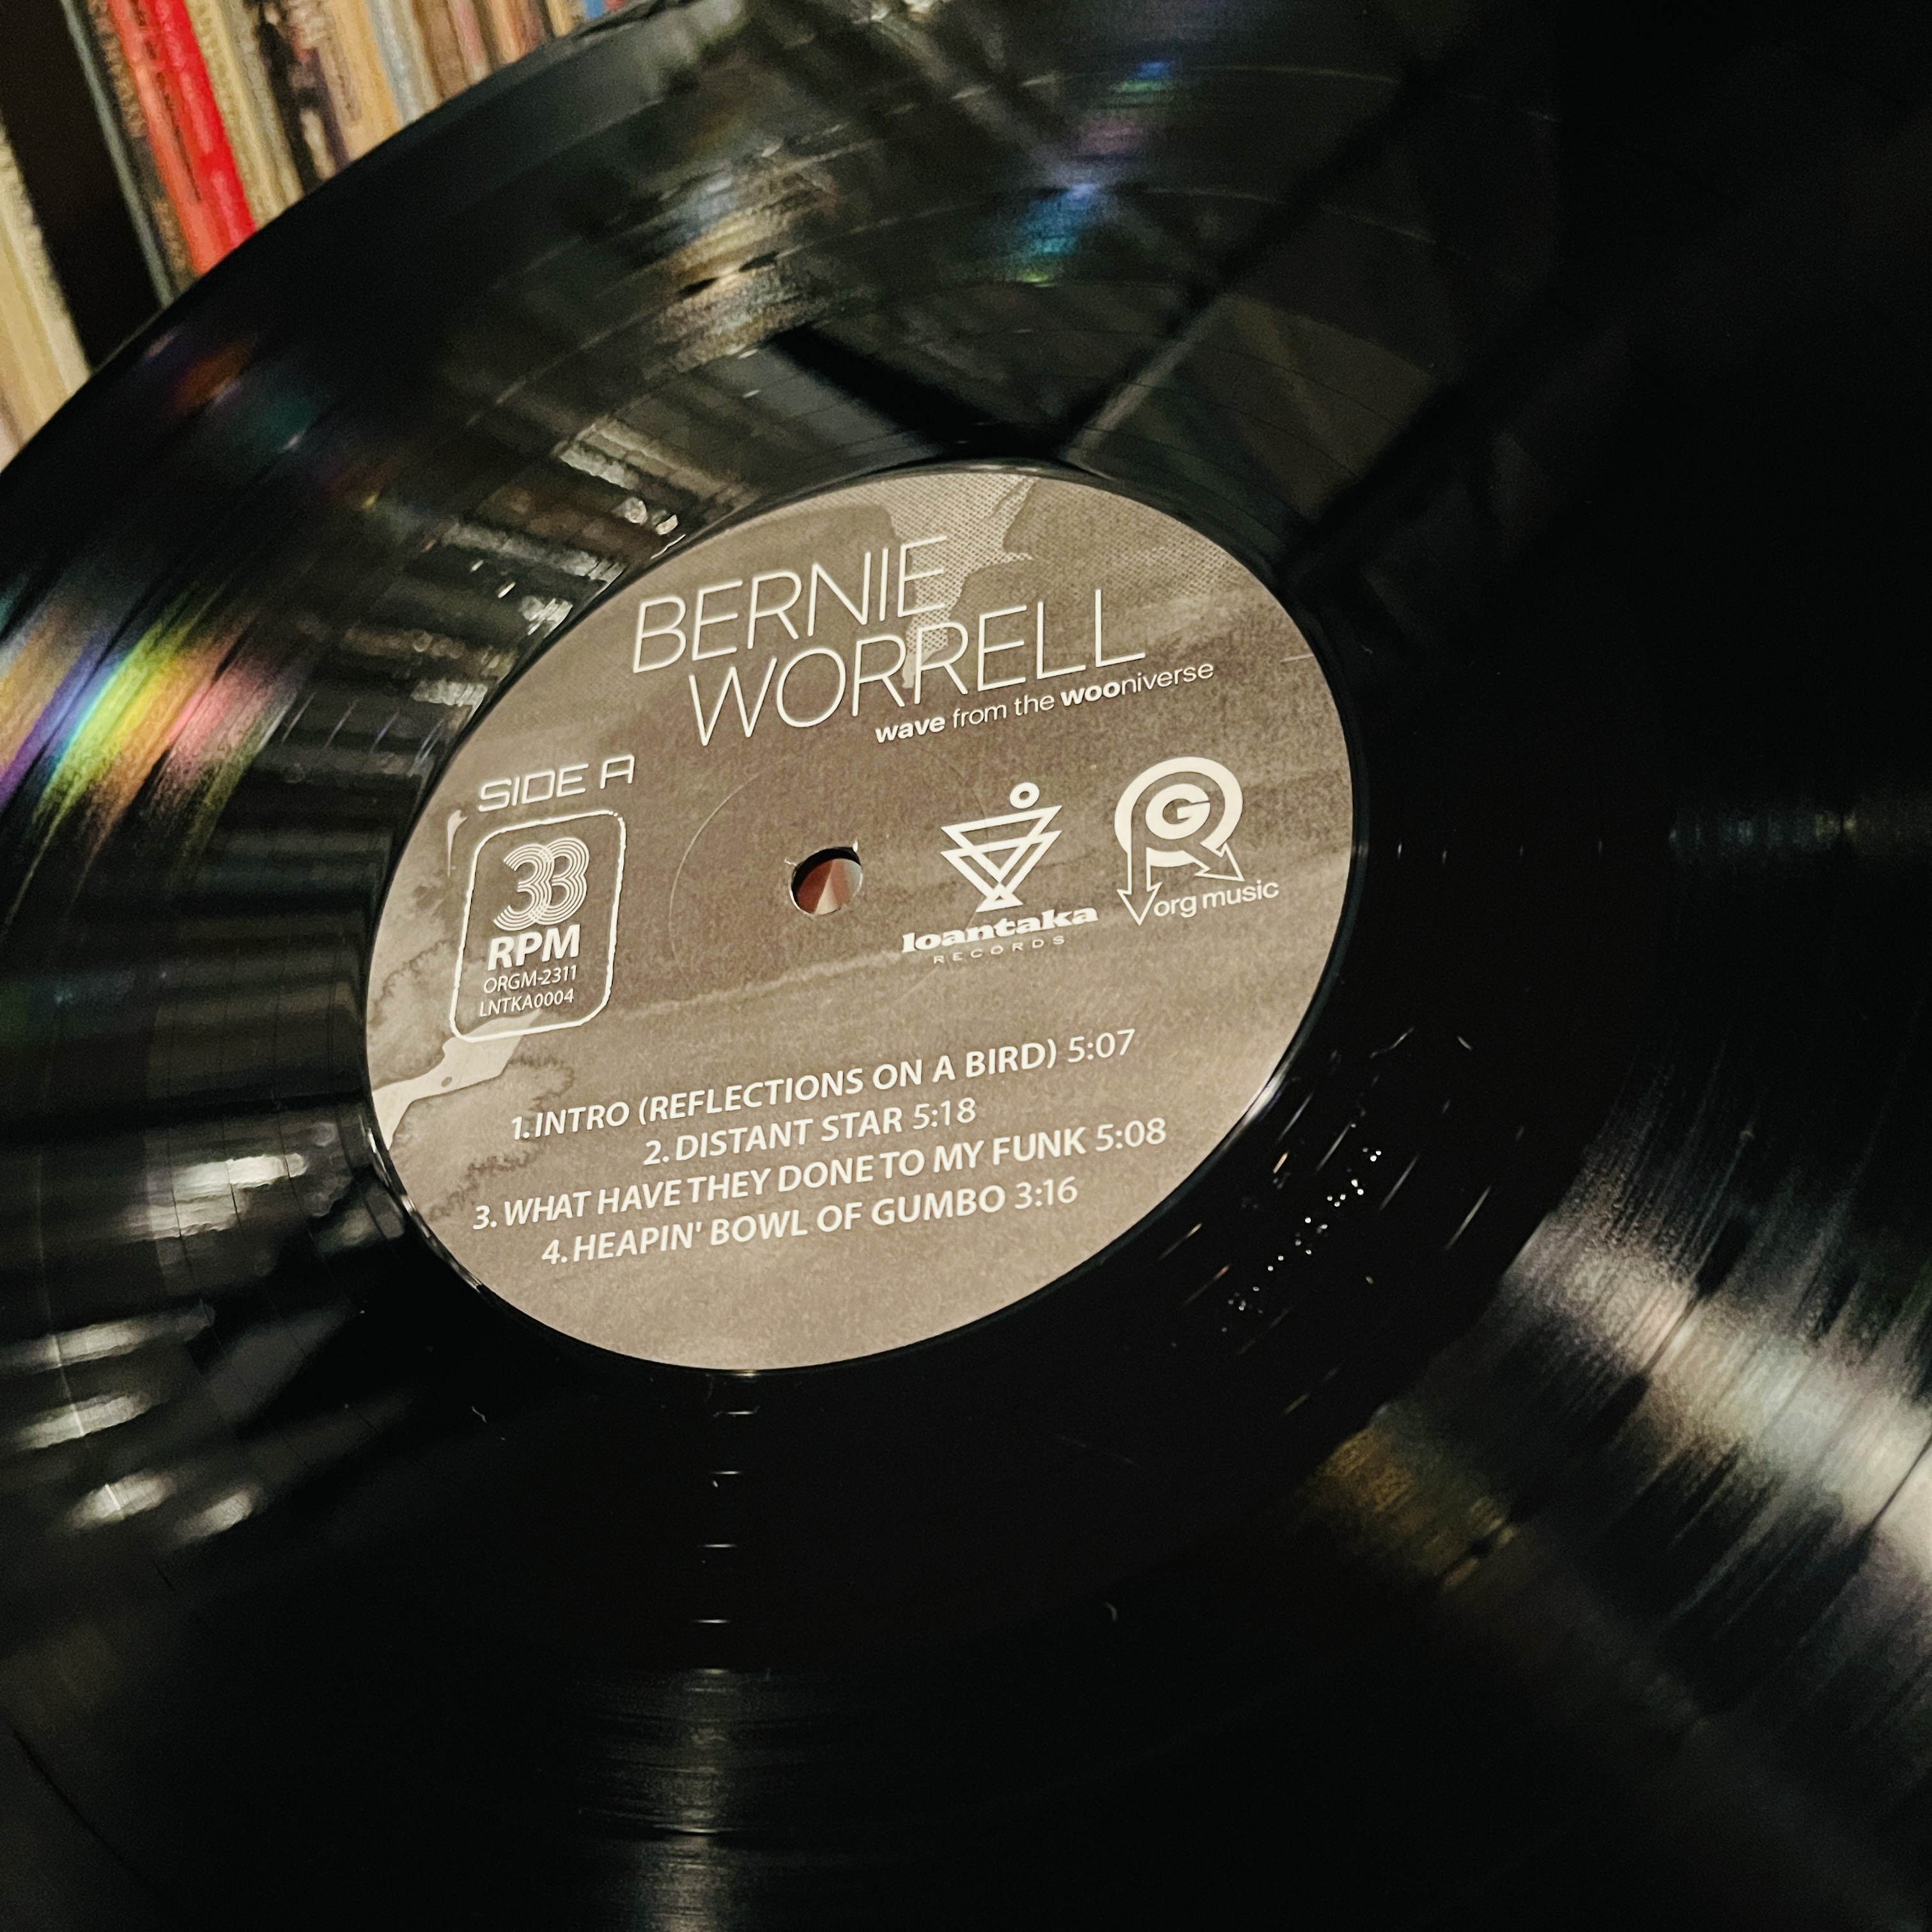 A Bernie Worrell vinyl disc